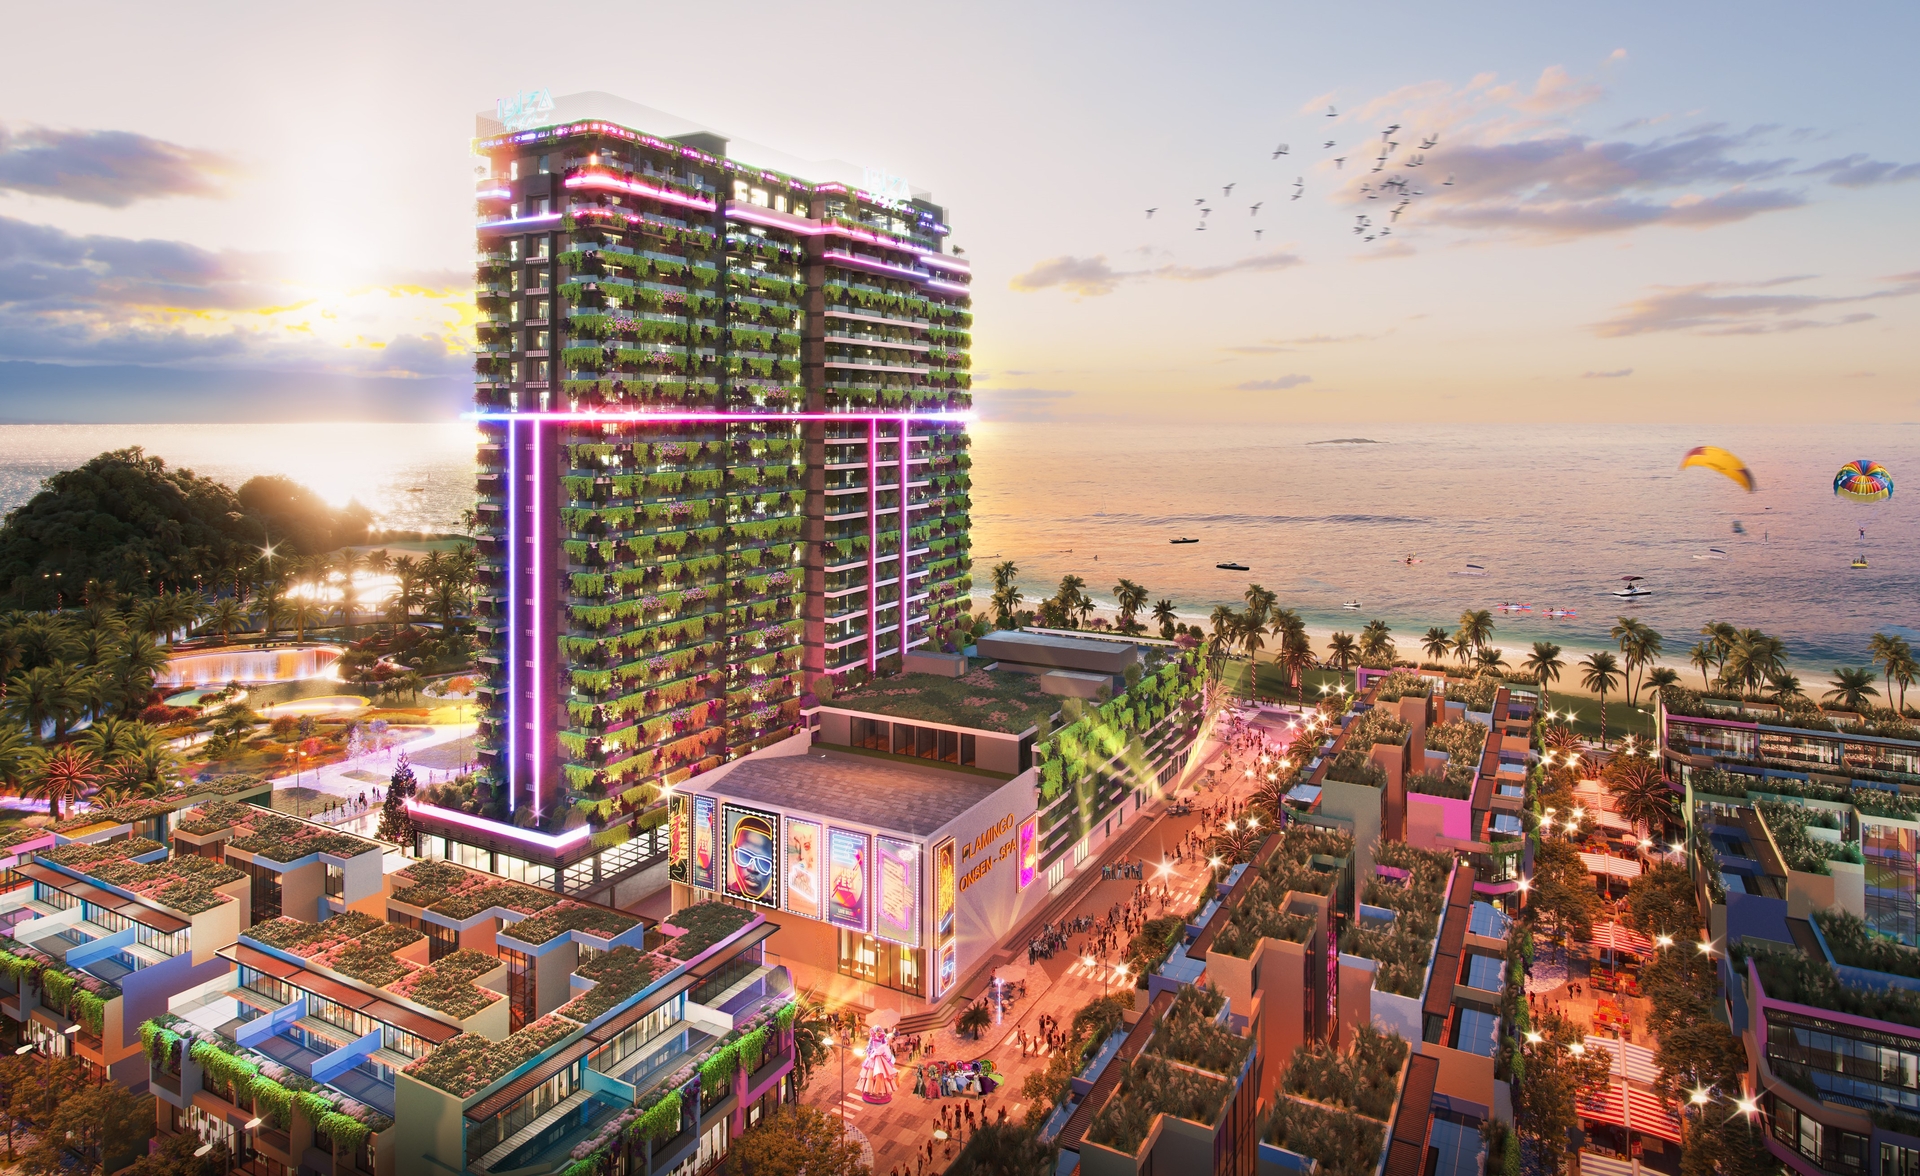 Toà tháp tiệc tùng Ibiza Party Resort và Trung tâm nghỉ dưỡng Bốn Mùa - The Seasons Center nằm cạnh nhau tại trung tâm của quần thể dự án Flamingo Ibiza 1. Ảnh: TT.